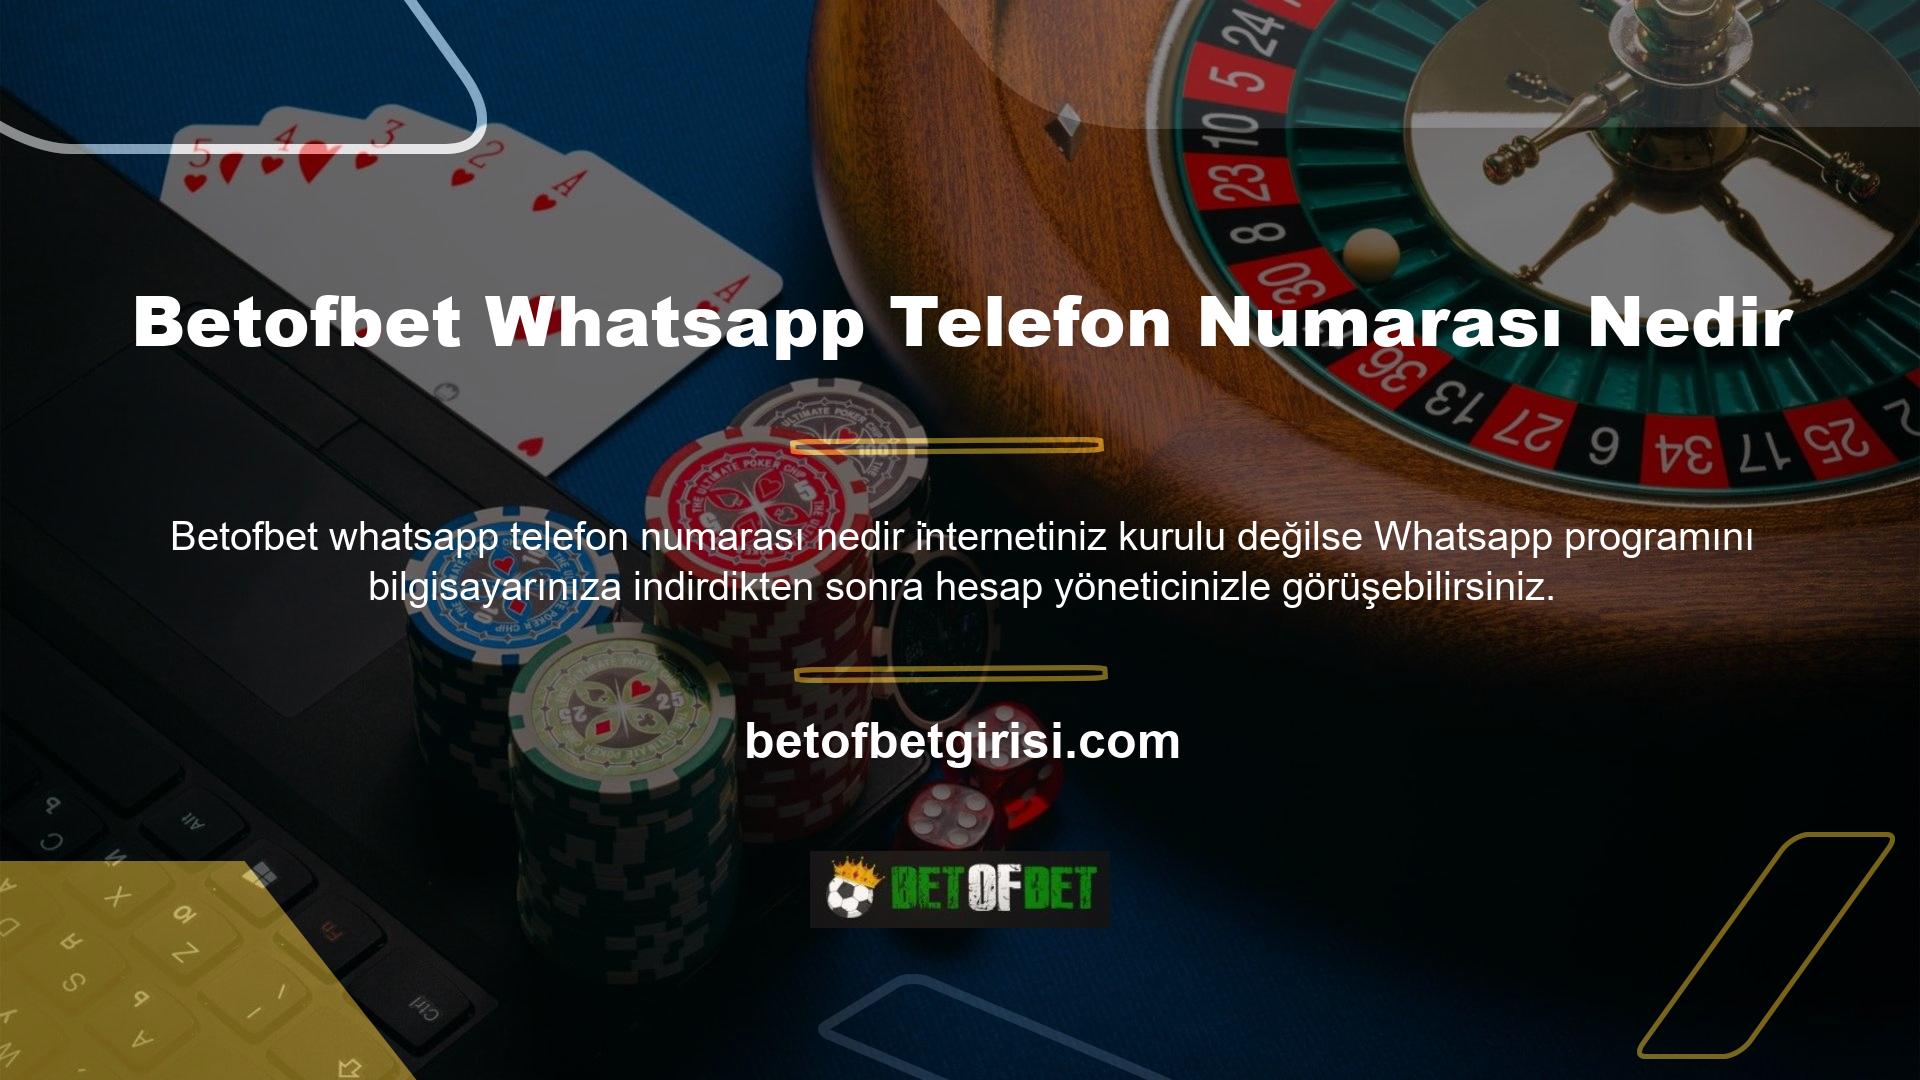 Betofbet Whatsapp destek hattını kullanan başka bir teknoloji daha var